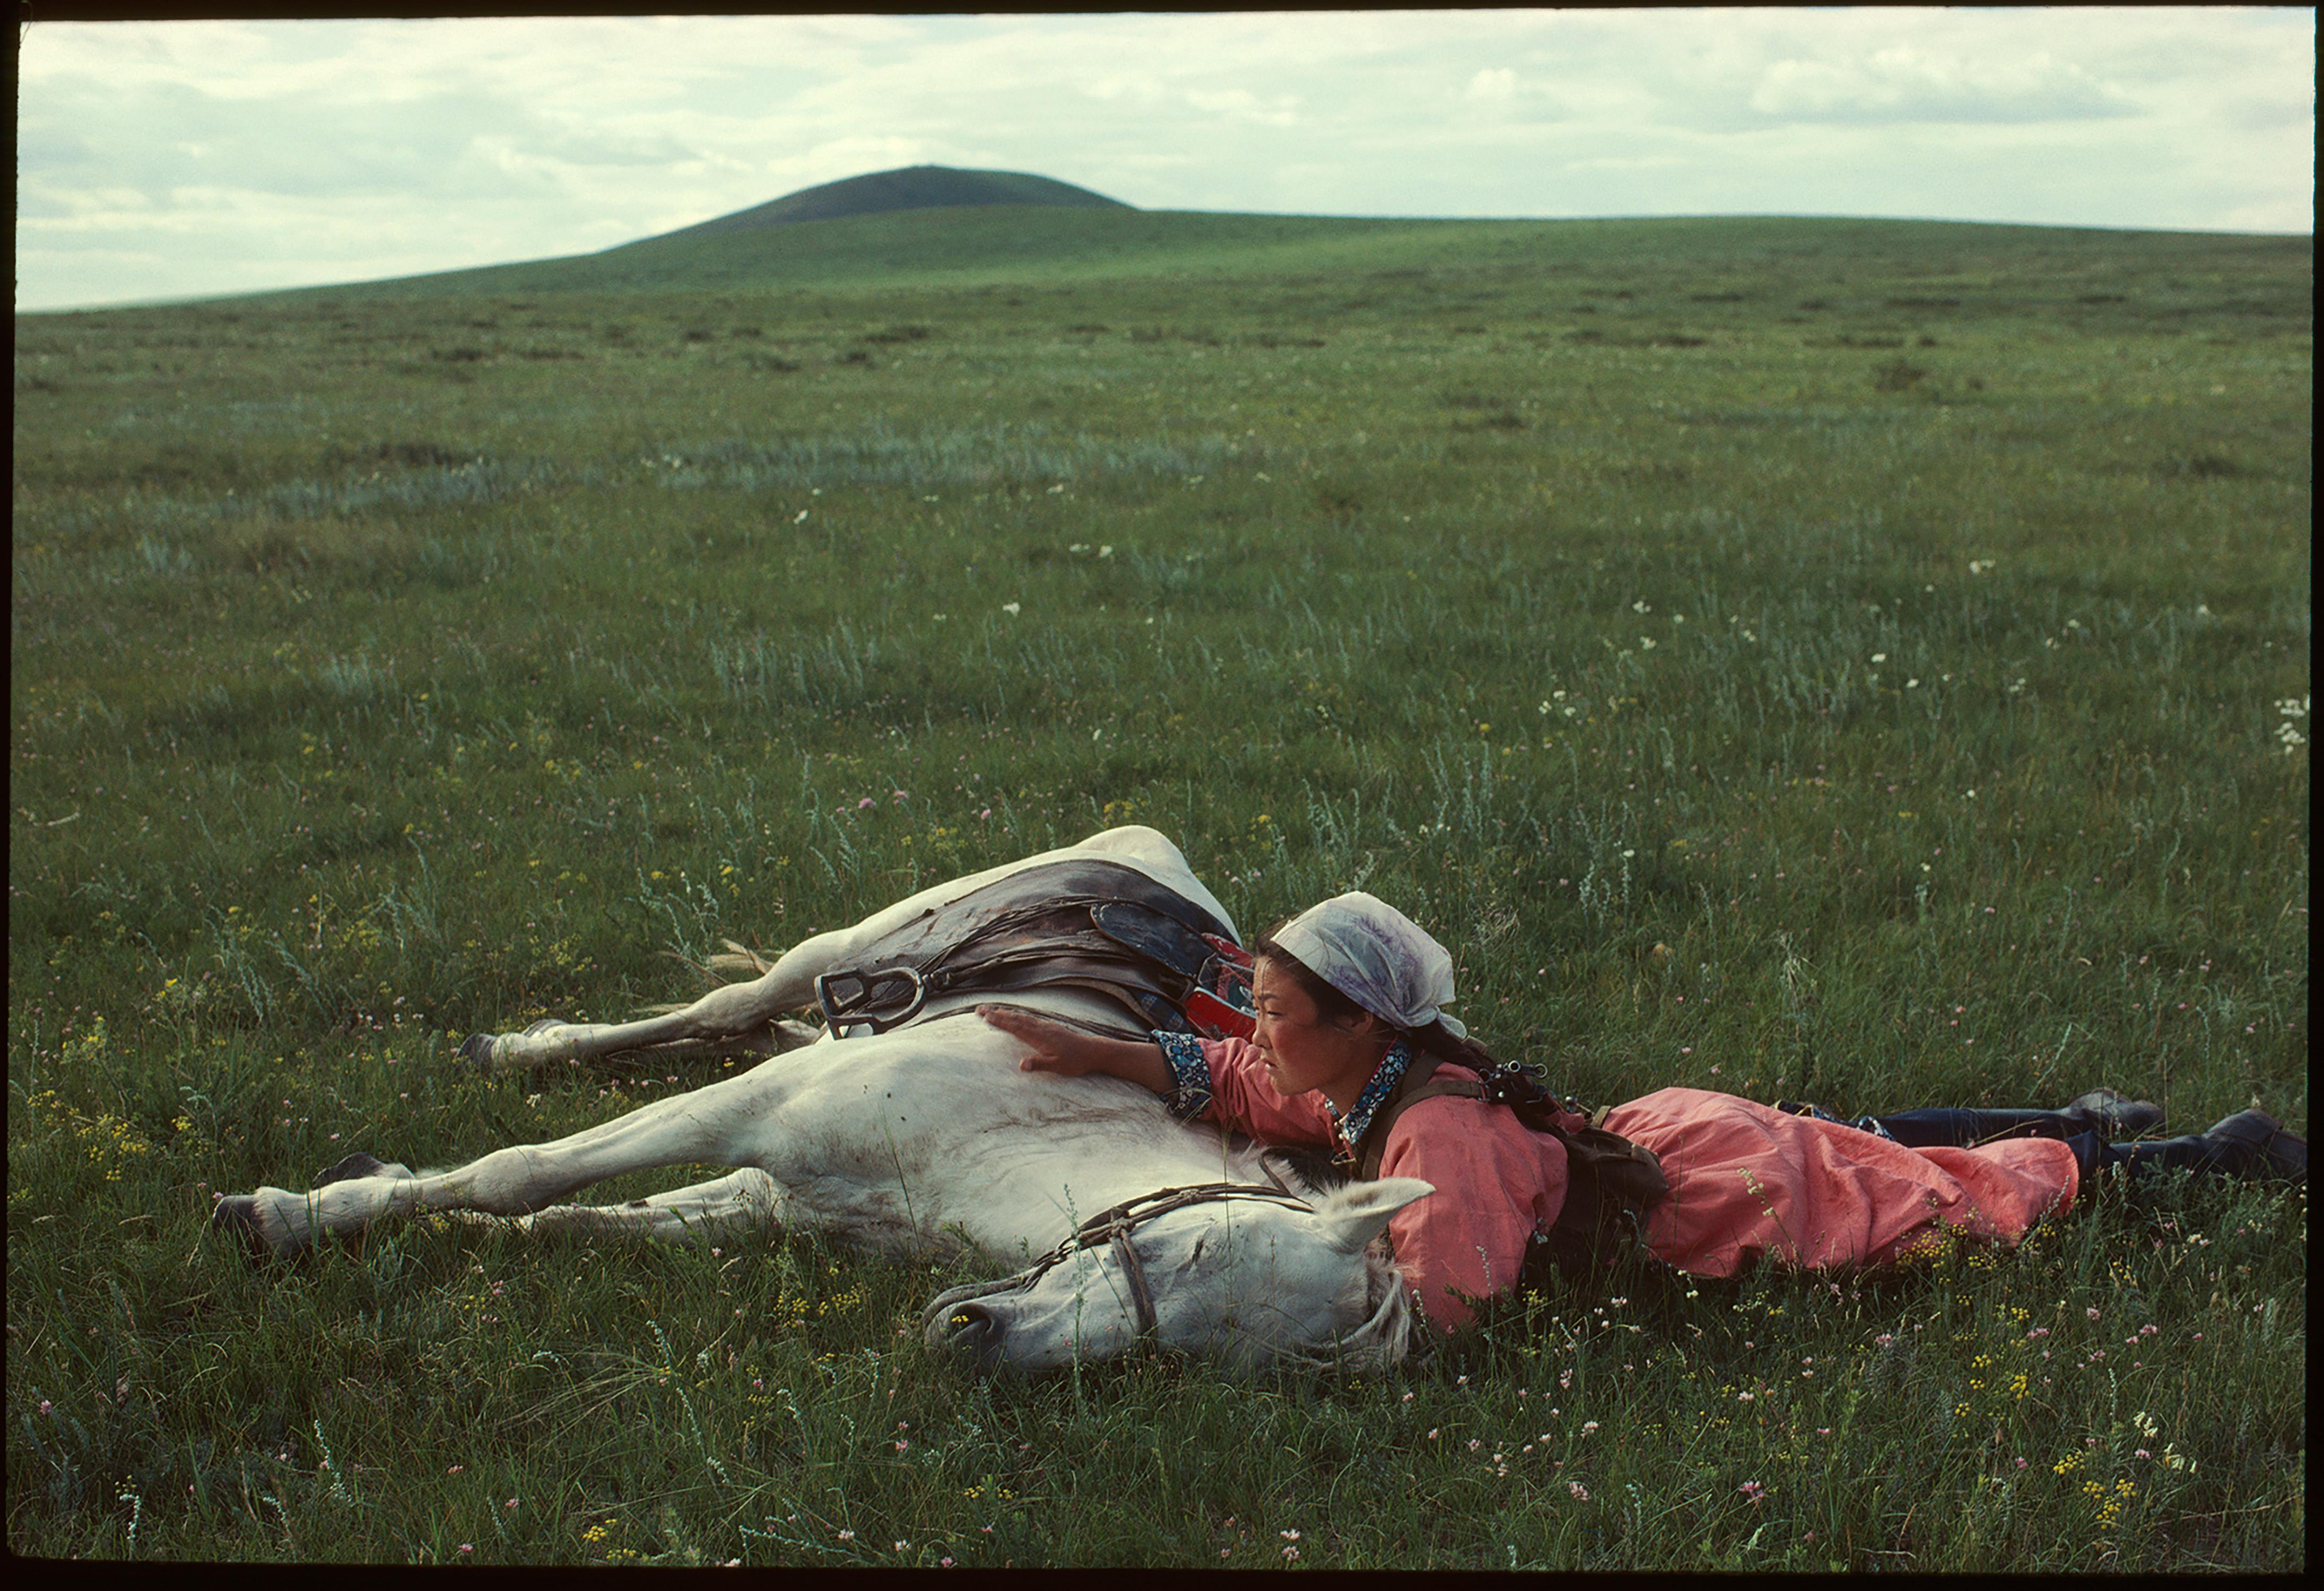 Eine Frau trainiert ein Pferd für die Miliz in der Inneren Mongolei, China, 1979.

Alle verfügbaren Größen und Ausgaben:
20" x 24", Auflage 25 + 3 Probedrucke
24" x 34", Auflage 25 + 3 Probedrucke

"Eve Arnold, 1912 als Tochter russischer